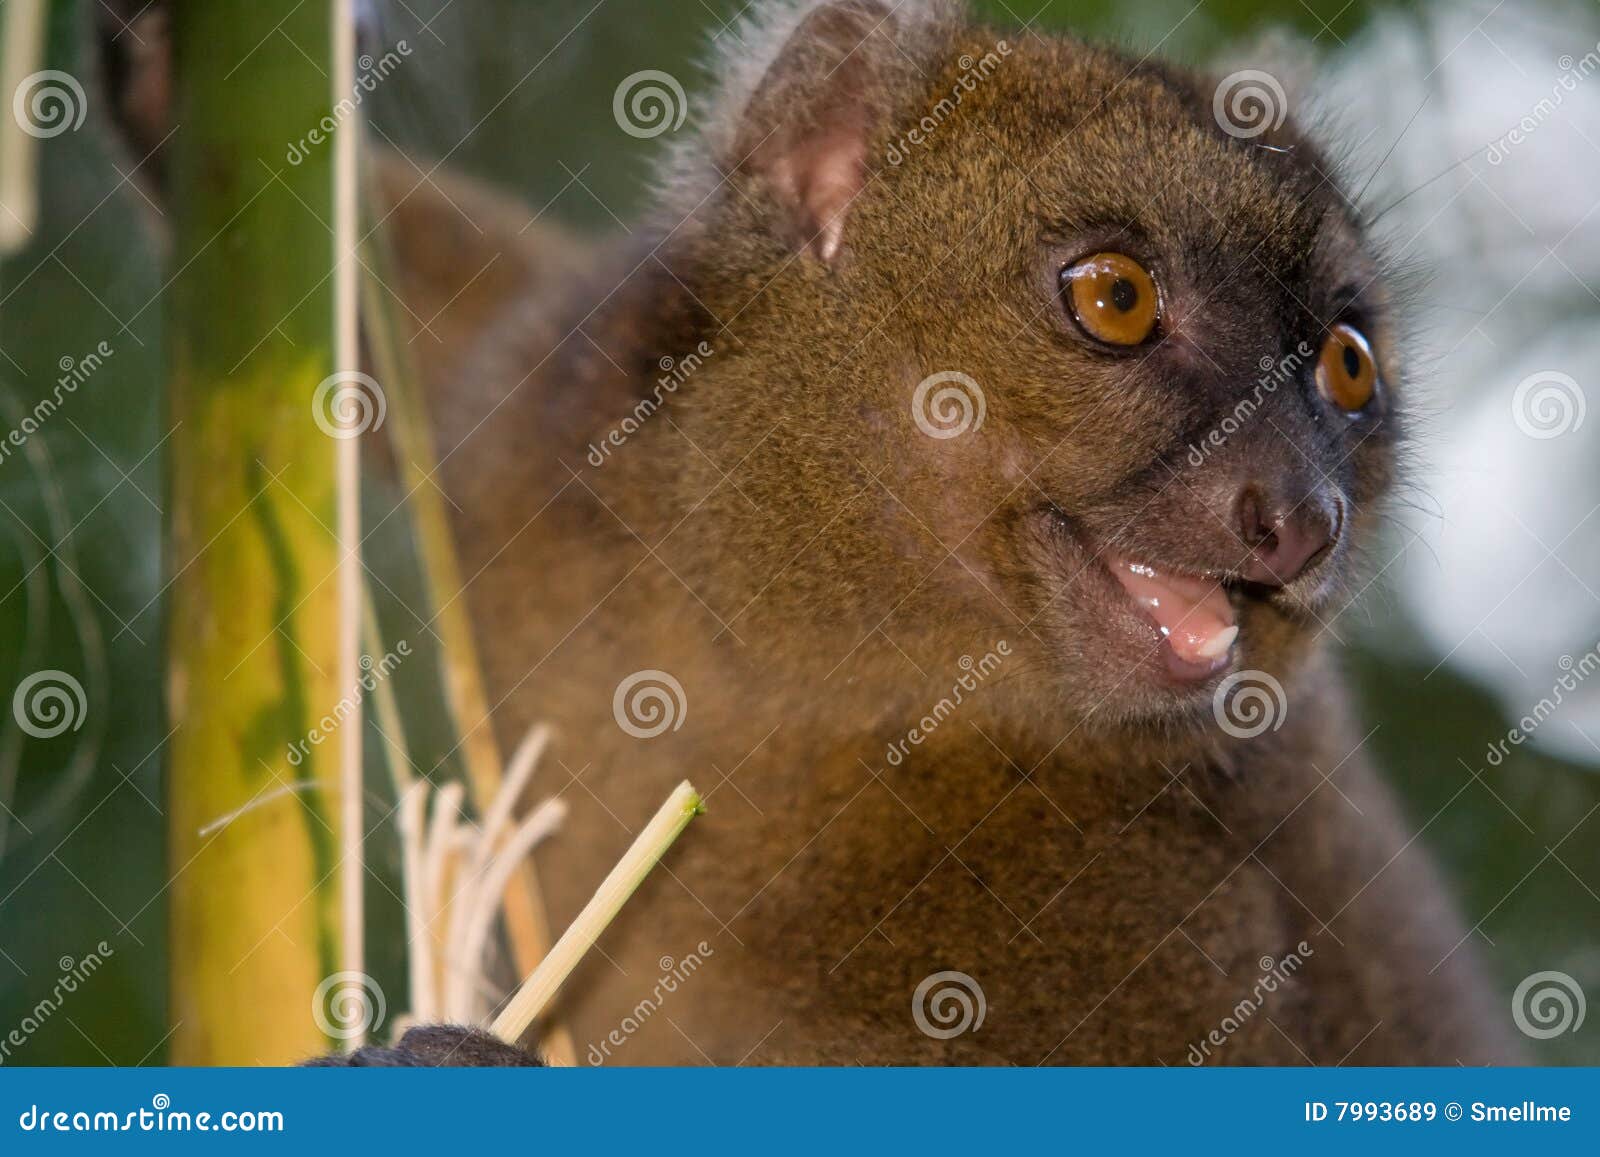 greater bamboo lemur